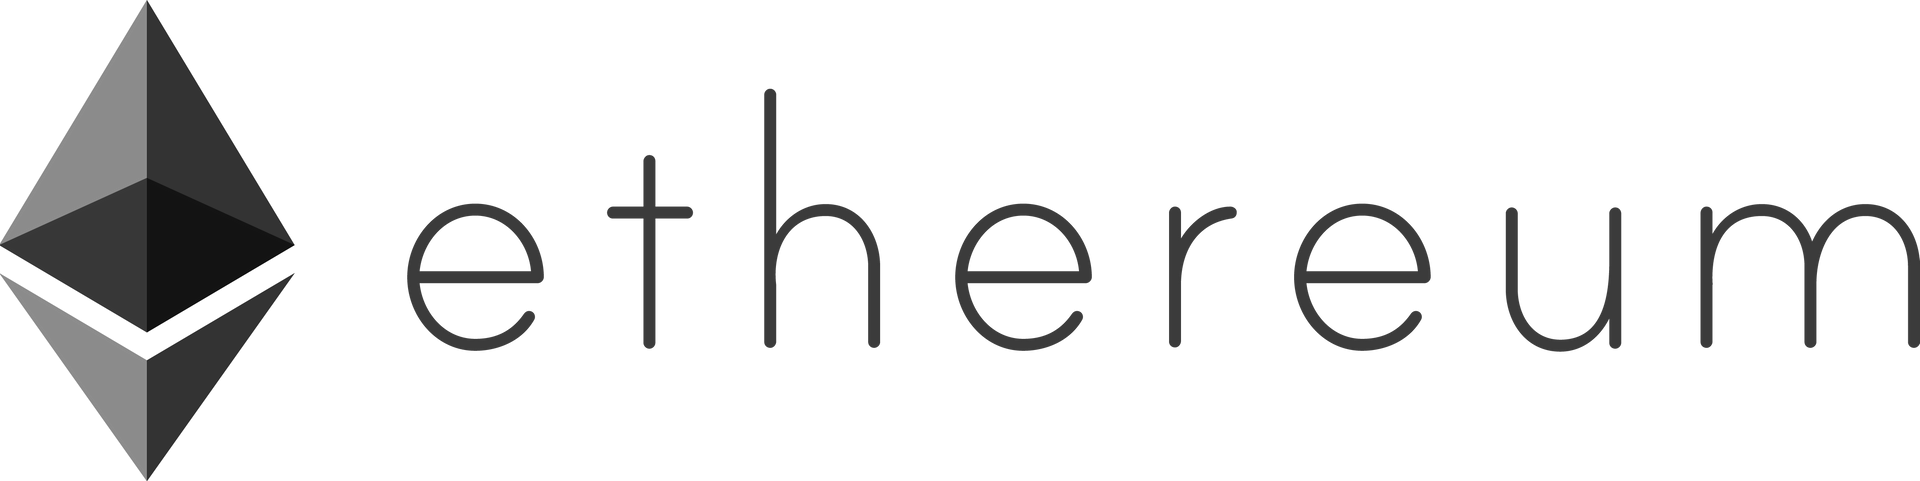 Логотип ETH в альбомному форматі (сірий)